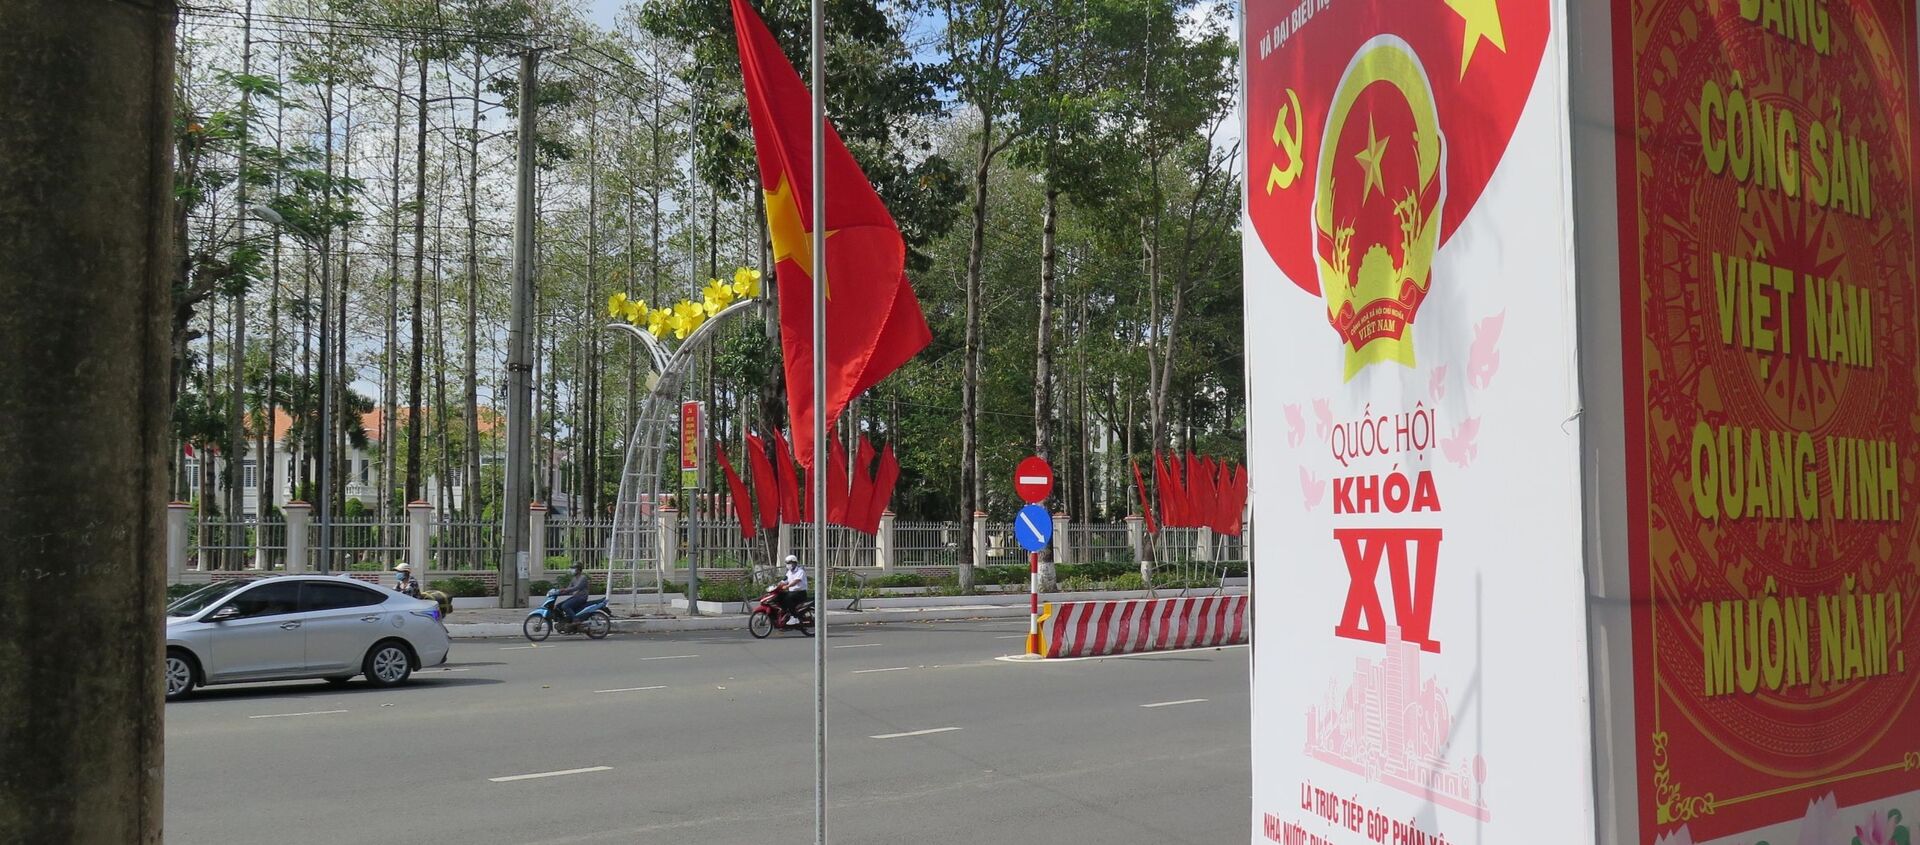 Băng rôn, khẩu hiệu tuyên truyền đã được treo ở các tuyến đường và địa điểm công cộng ở Cà Mau. - Sputnik Việt Nam, 1920, 24.05.2021